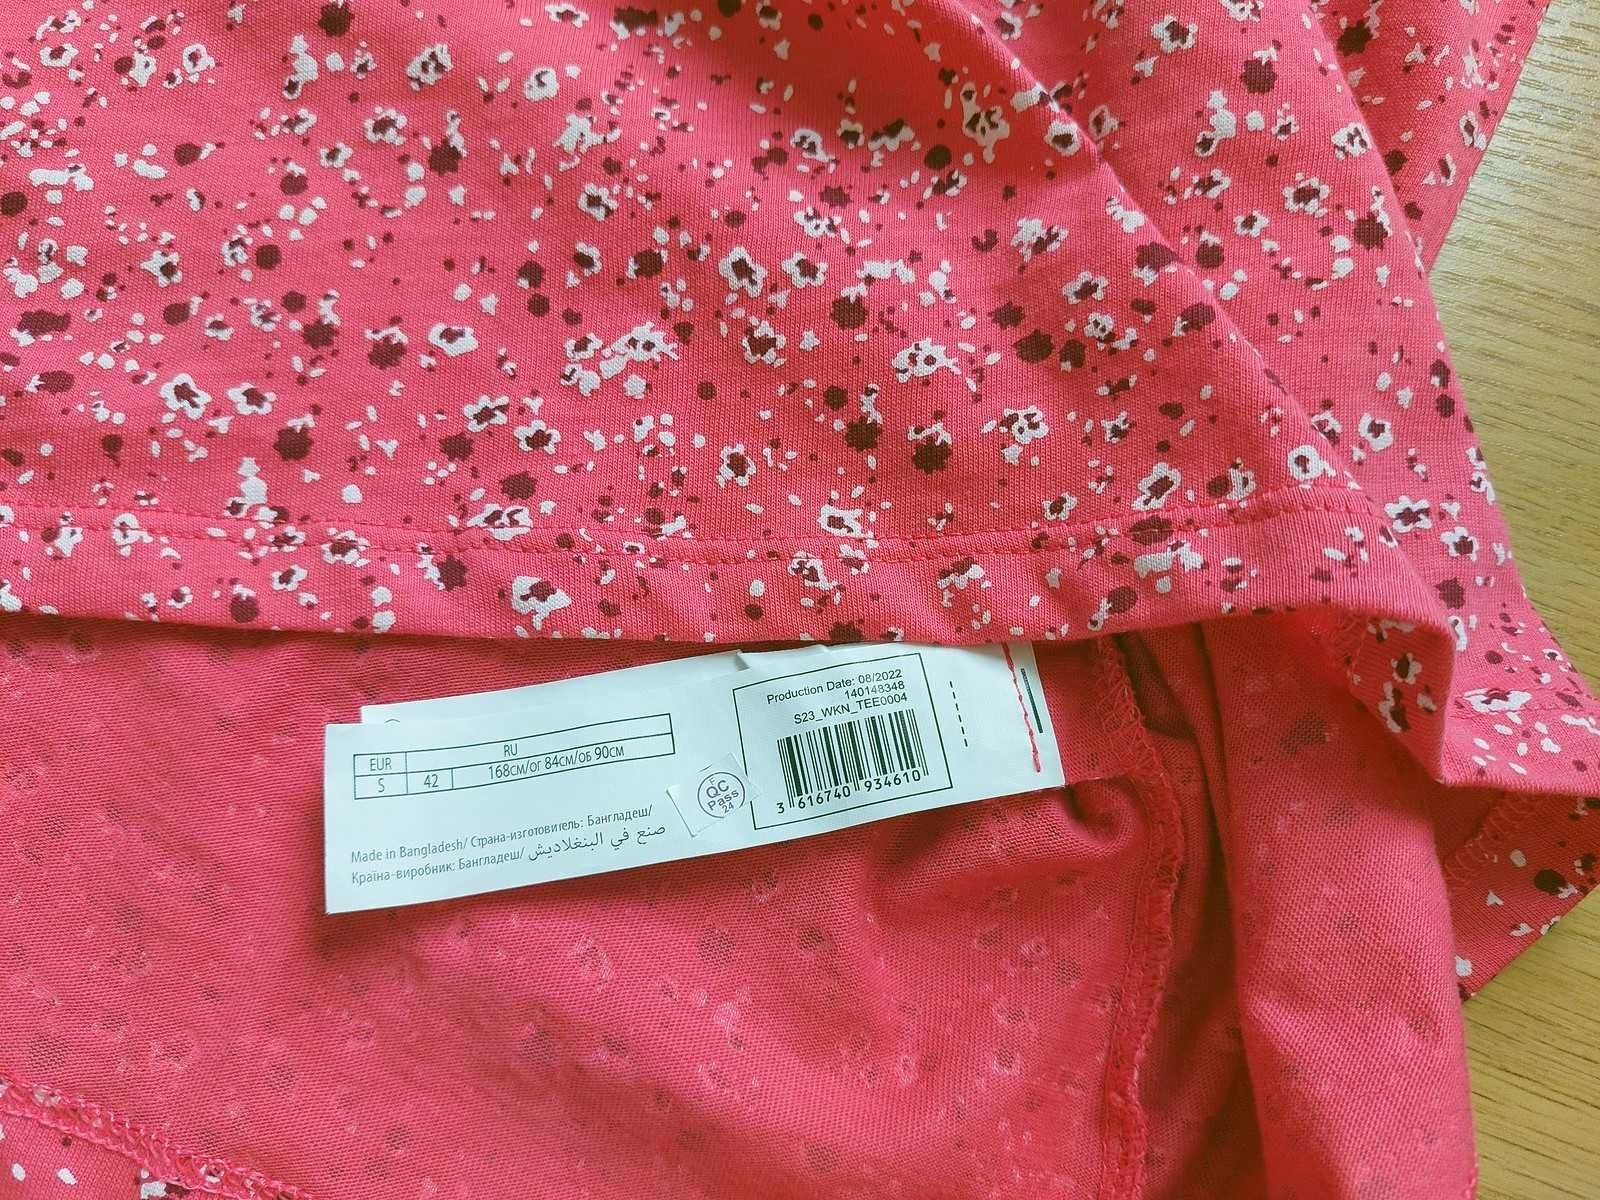 Bluzka czerwona T-shirt S 36 Inextenso bawełna Nowa z metką